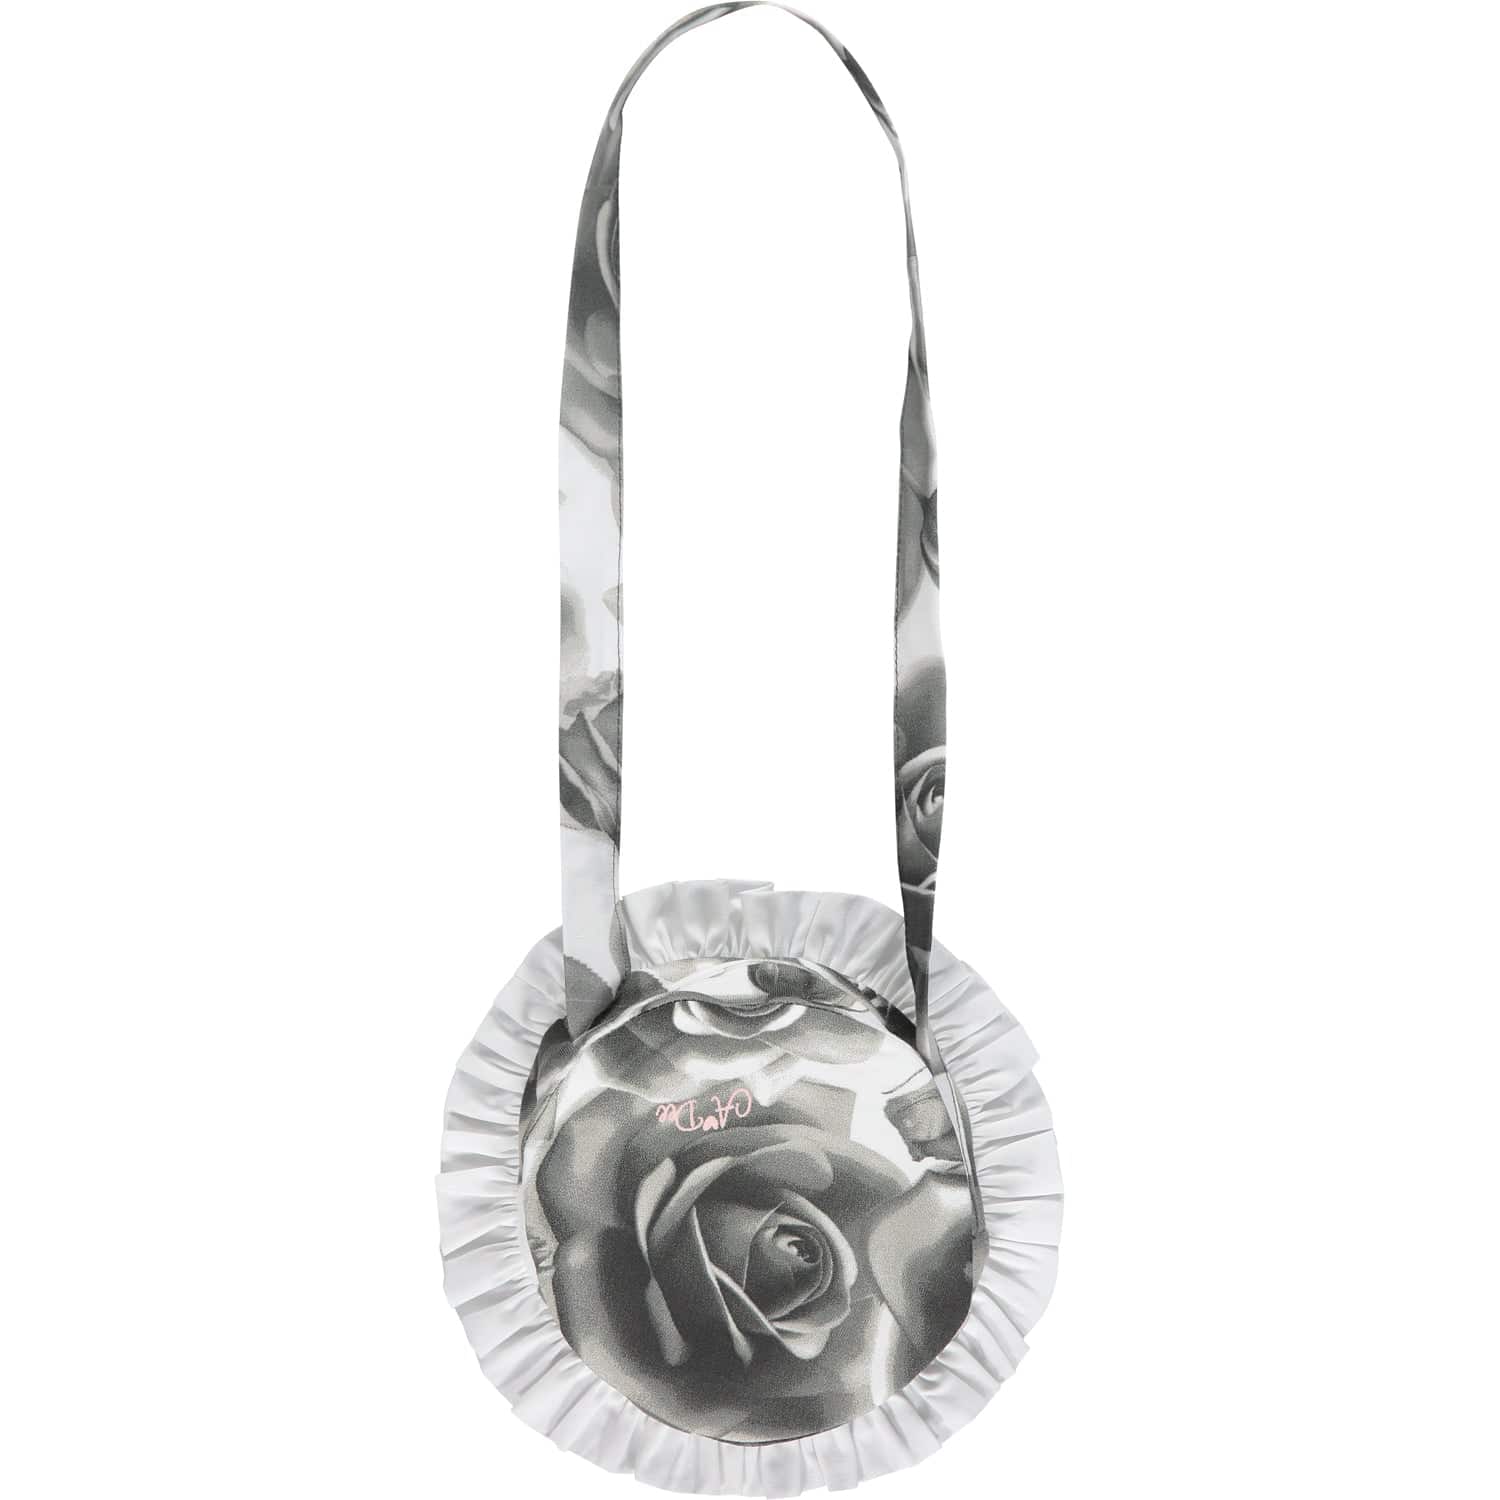 A DEE - Tianna Rose Bag - Light Grey